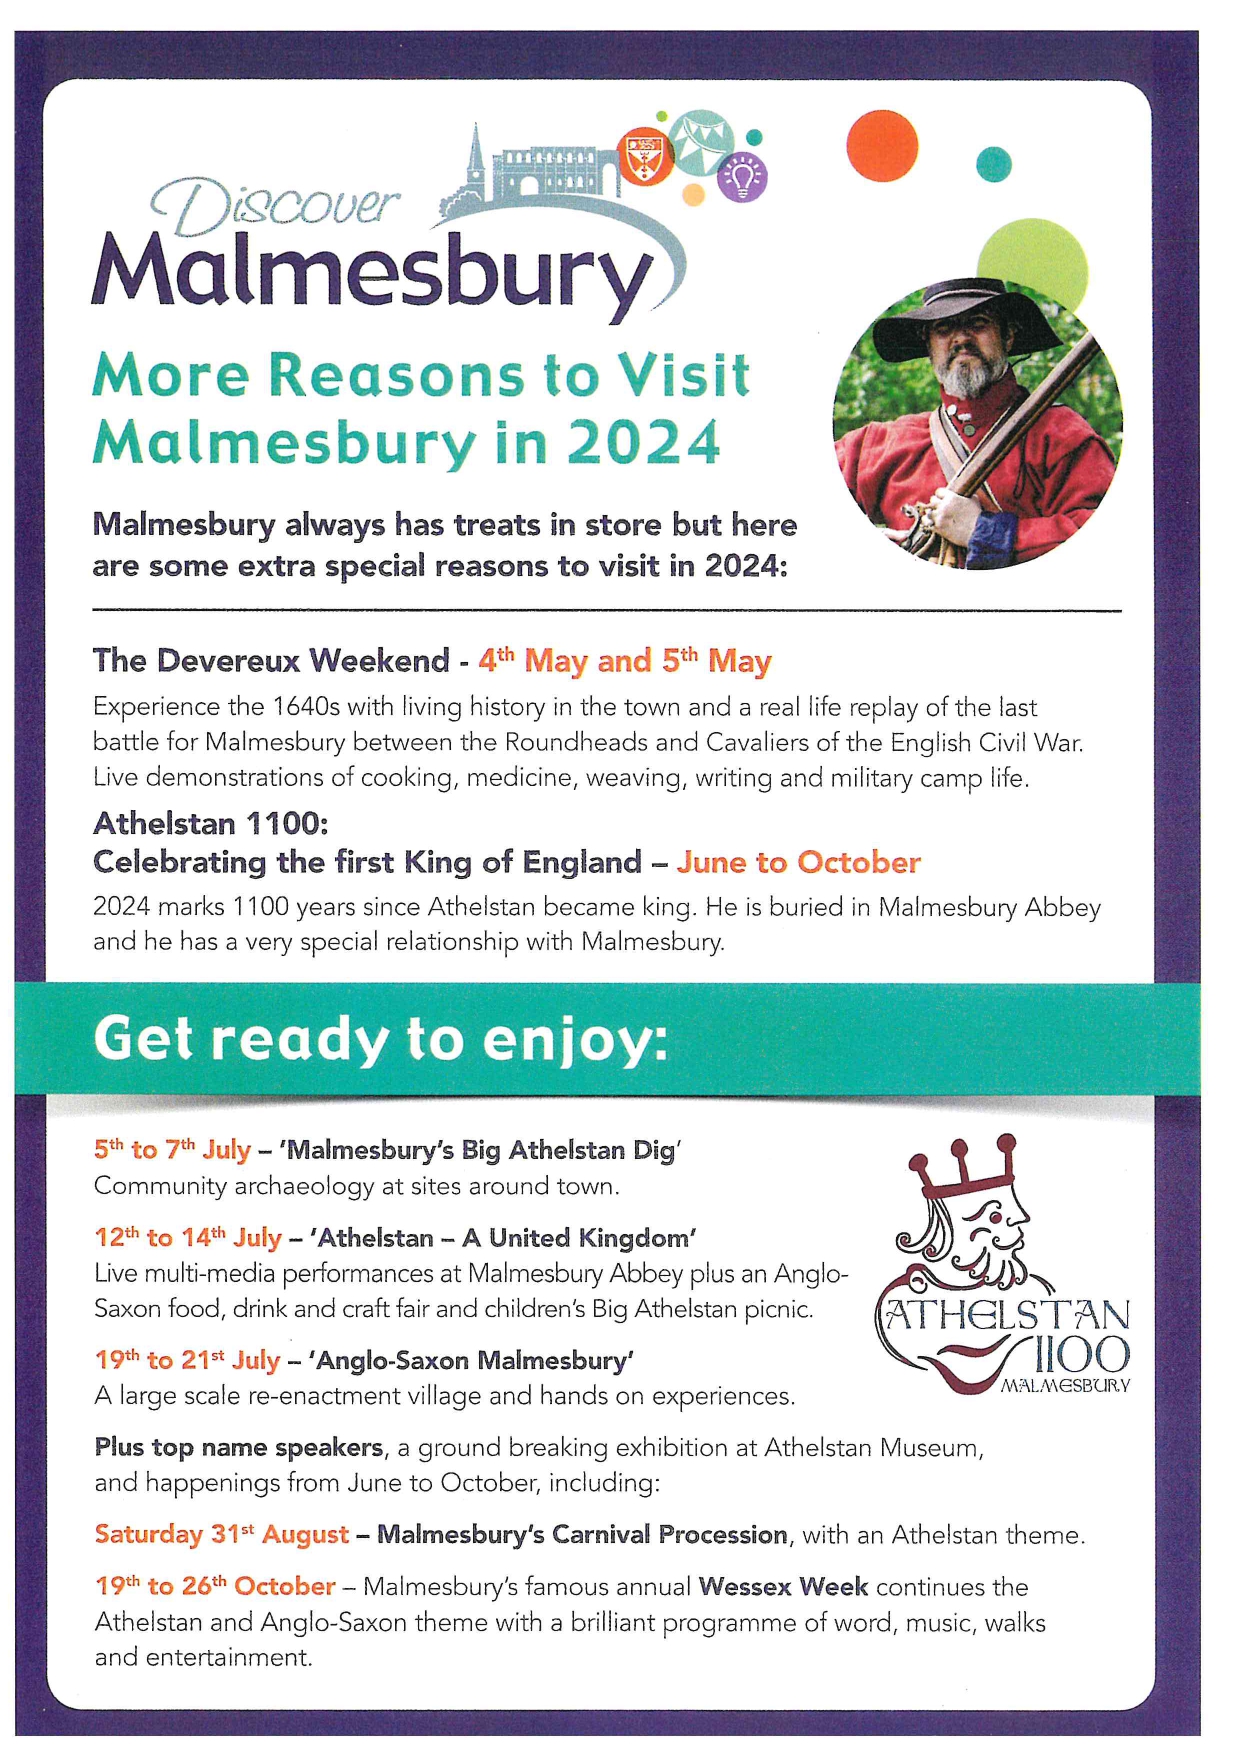 More Reasons to Visit Malmesbury in 2024